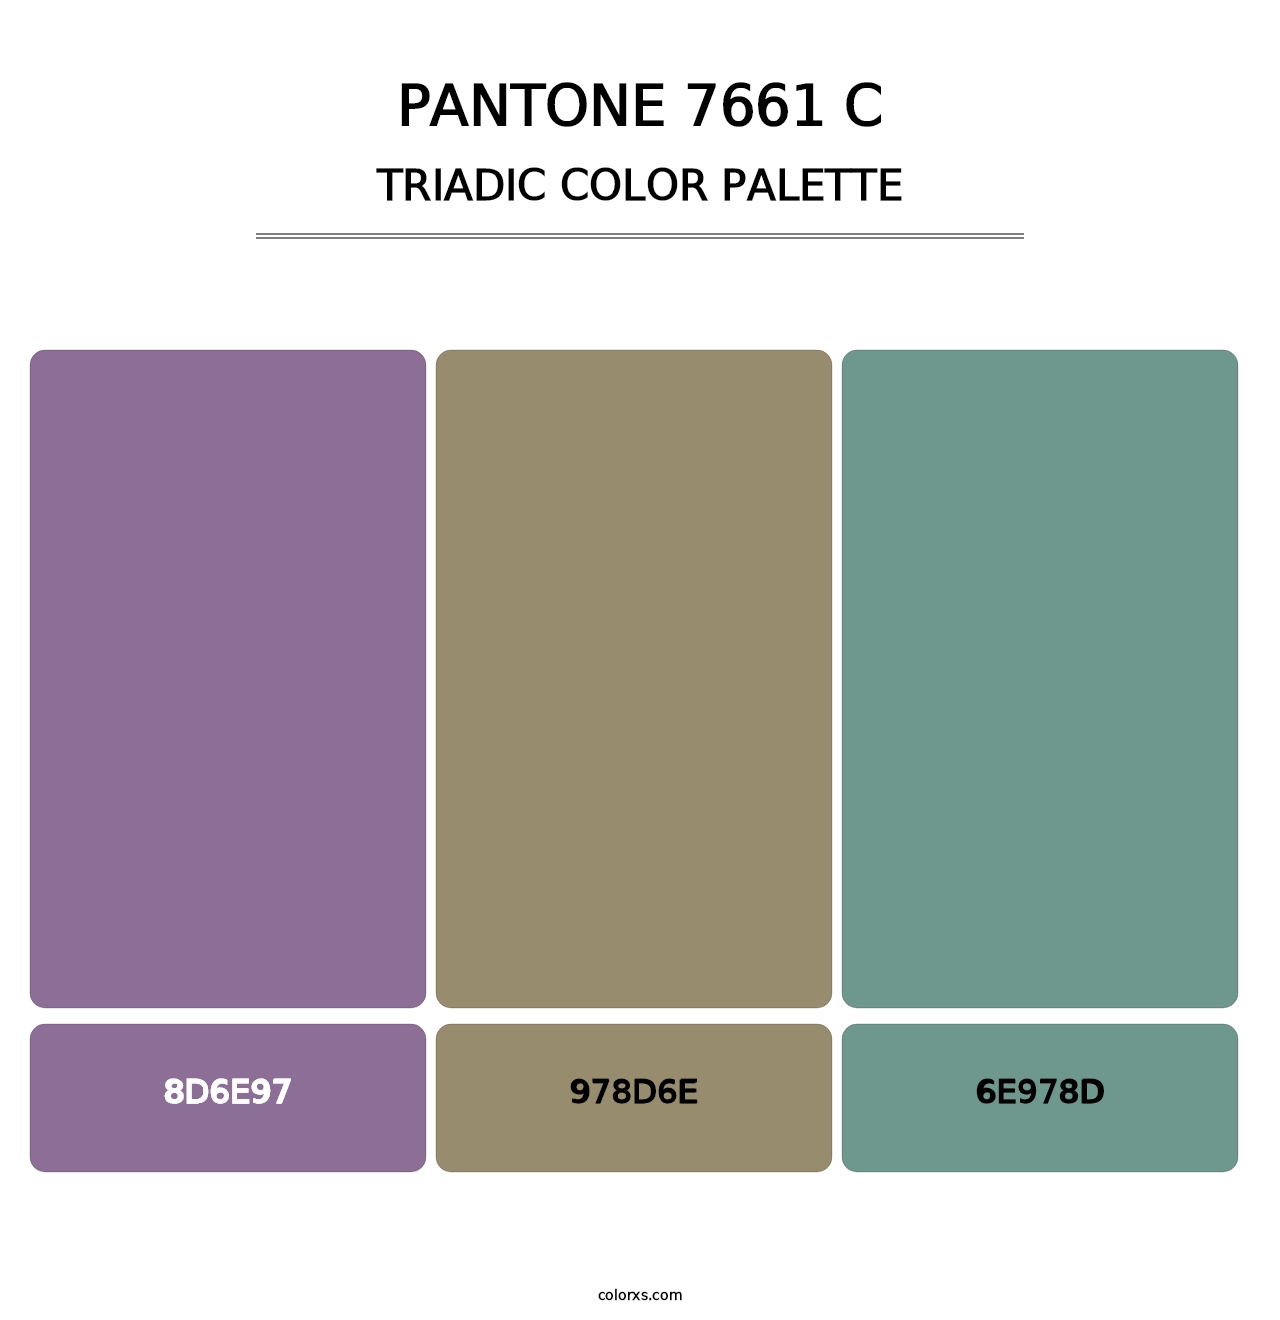 PANTONE 7661 C - Triadic Color Palette